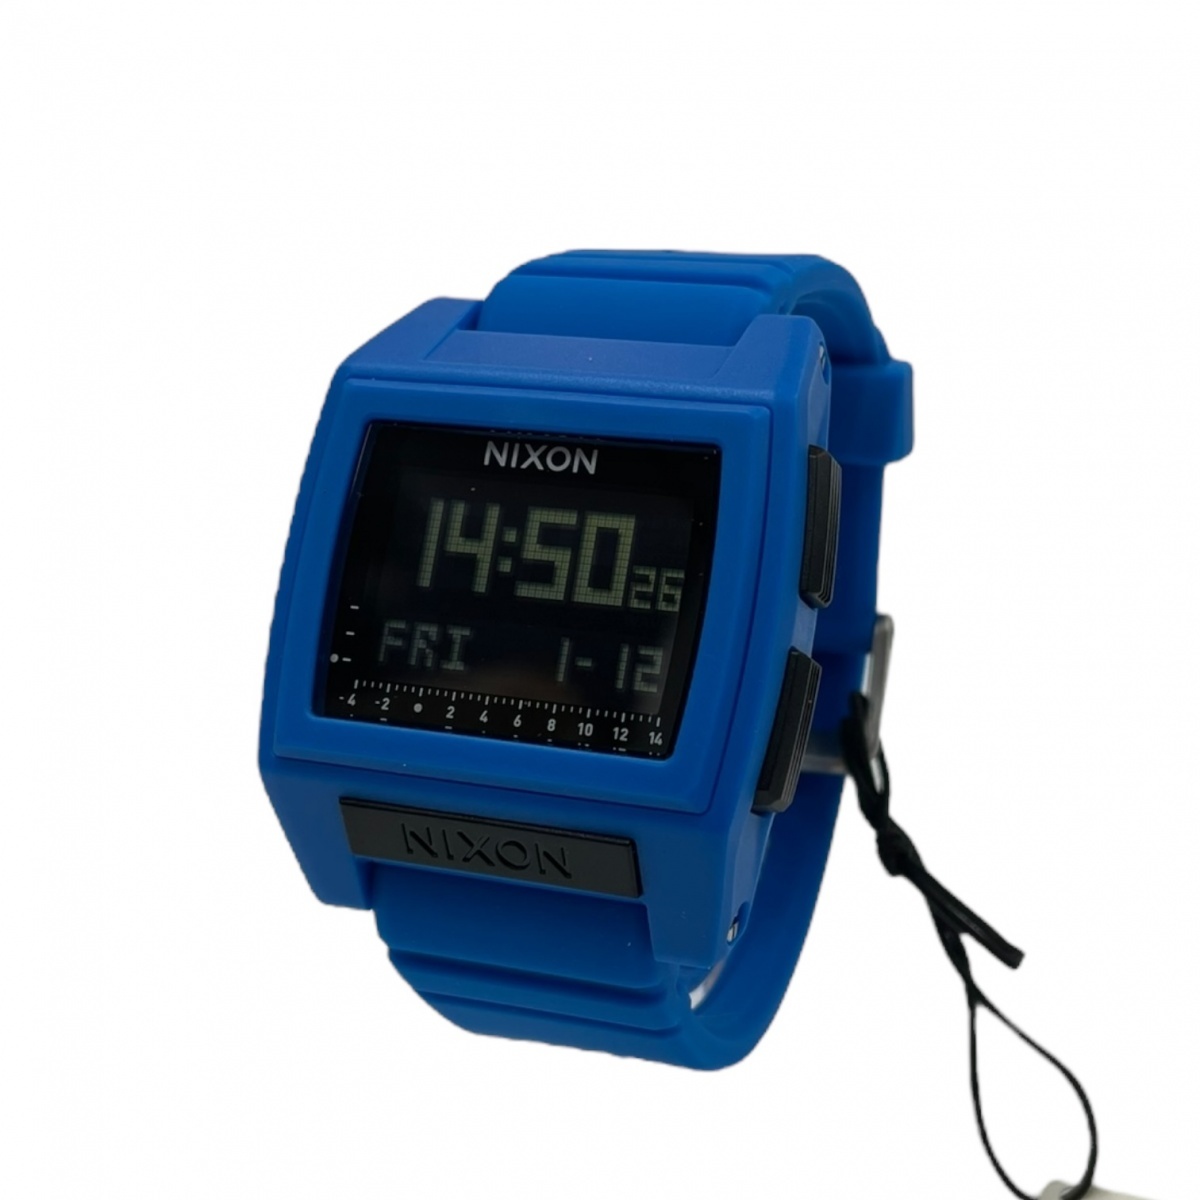 NIXON ニクソン THE BASE TIDE PRO ザ・ベースタイド プロ クォーツ腕時計 デジタル サーフウォッチ マリンスポーツ A1212-300-00 ブルー